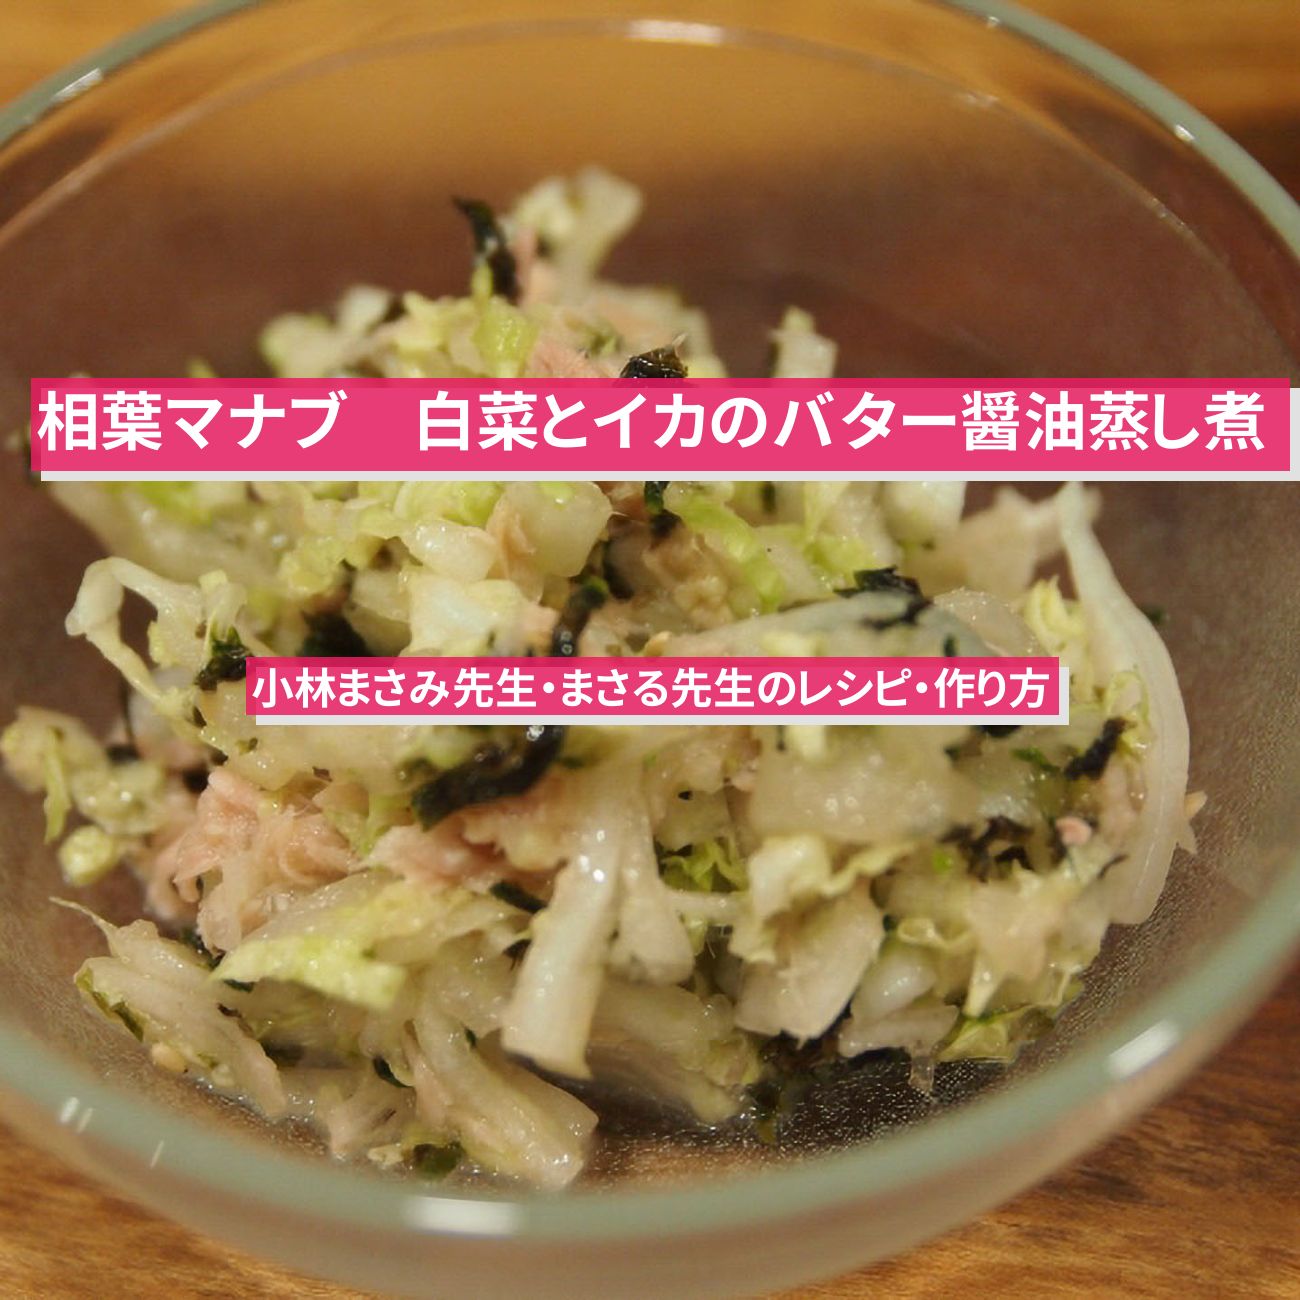 【相葉マナブ】『白菜とイカのバター醤油蒸し煮』小林まさみ先生・まさる先生のレシピ・作り方